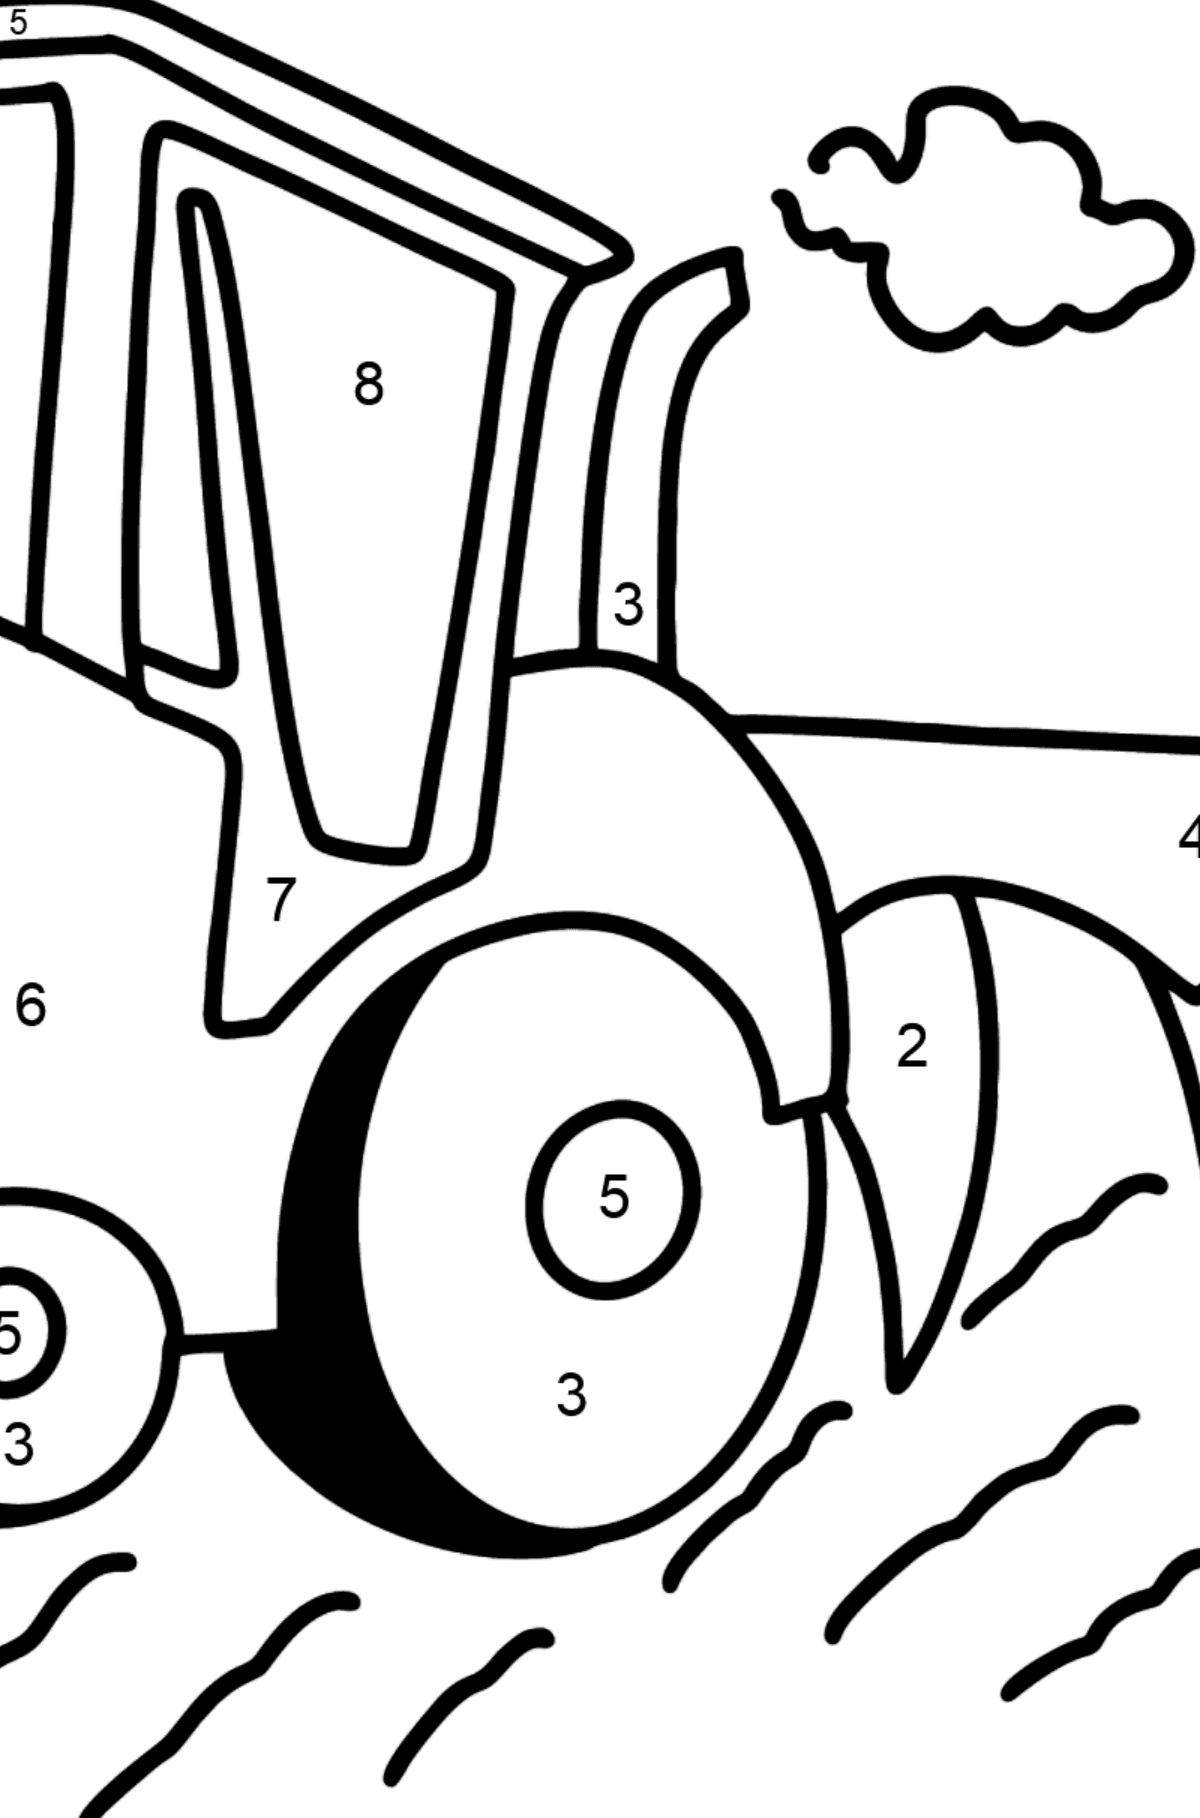 Ausmalbild Traktor mit Pflug - Malen nach Zahlen für Kinder